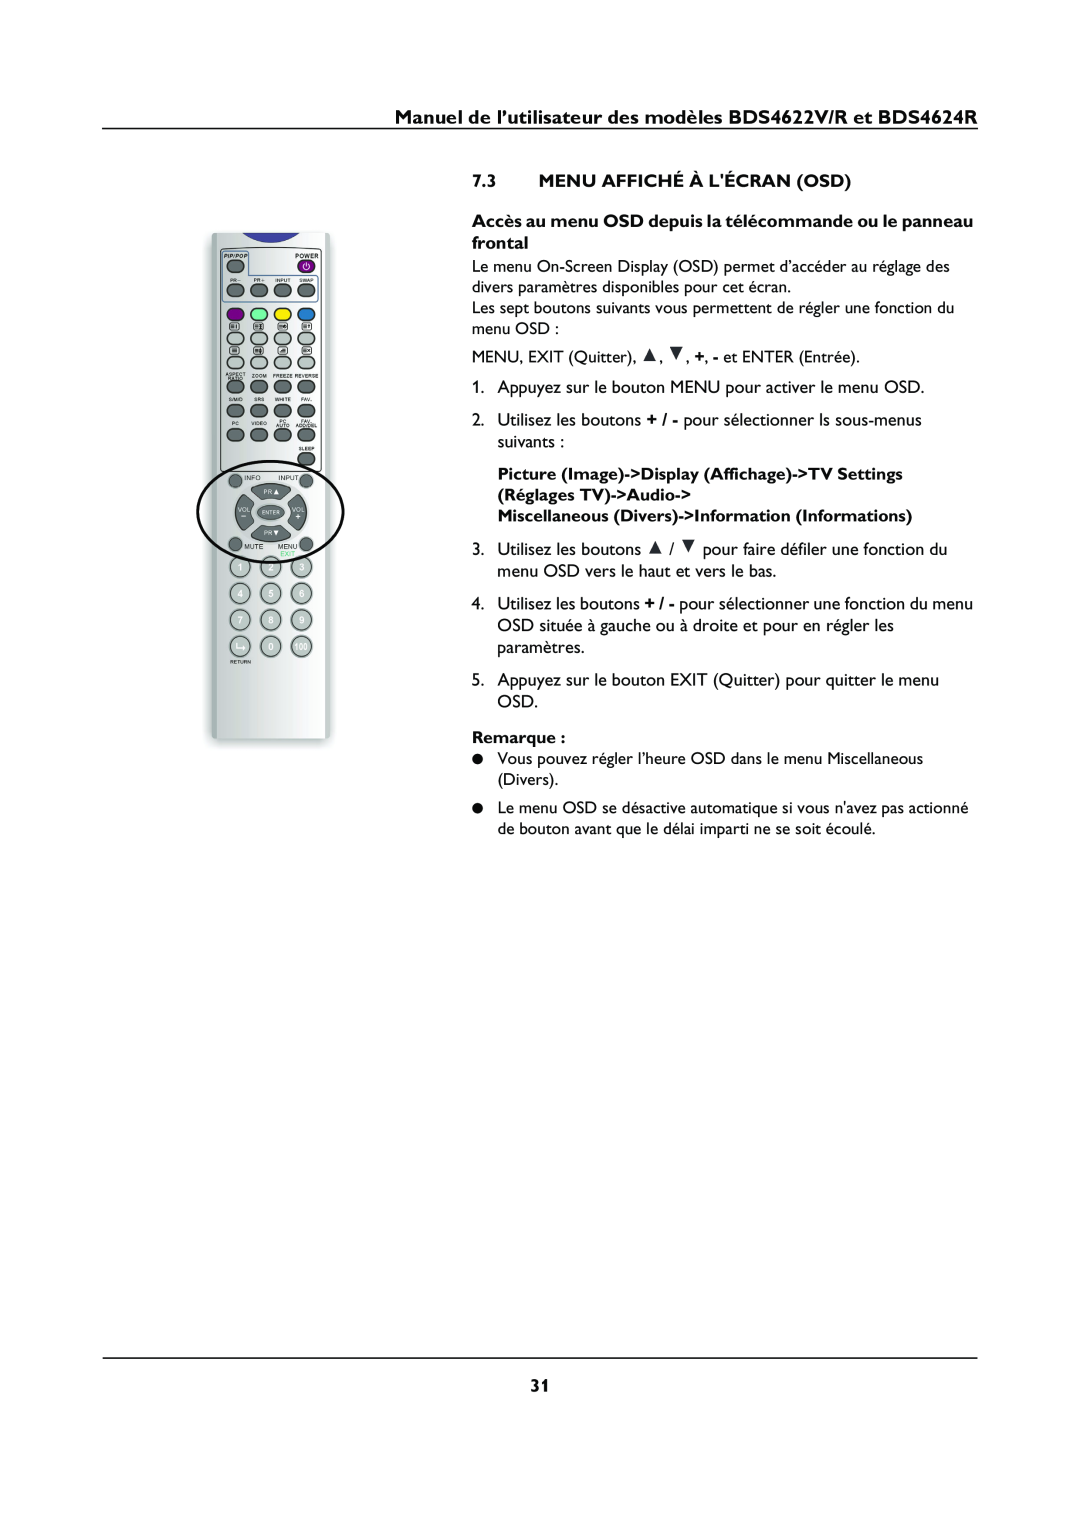 Philips BDS4622V manual Menu Affiché À Lécran Osd, Accès au menu OSD depuis la télécommande ou le panneau frontal, Remarque 